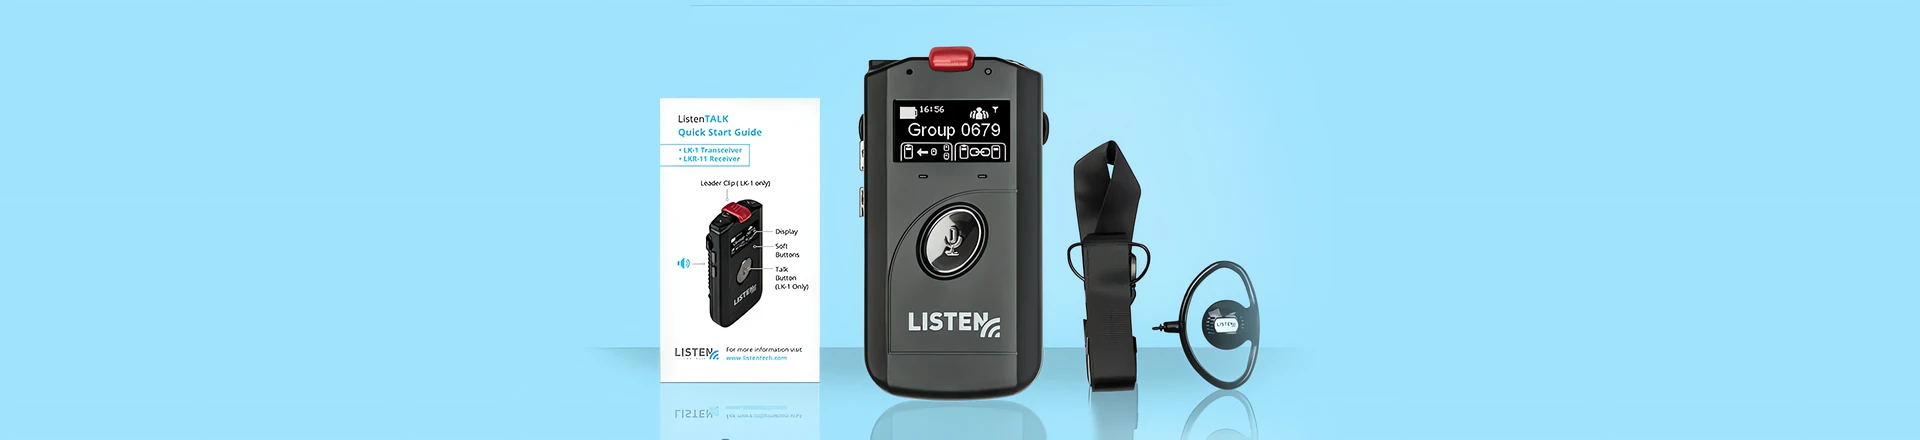 Listen aktualizuje firmware ListenTALK do wersji 2.0